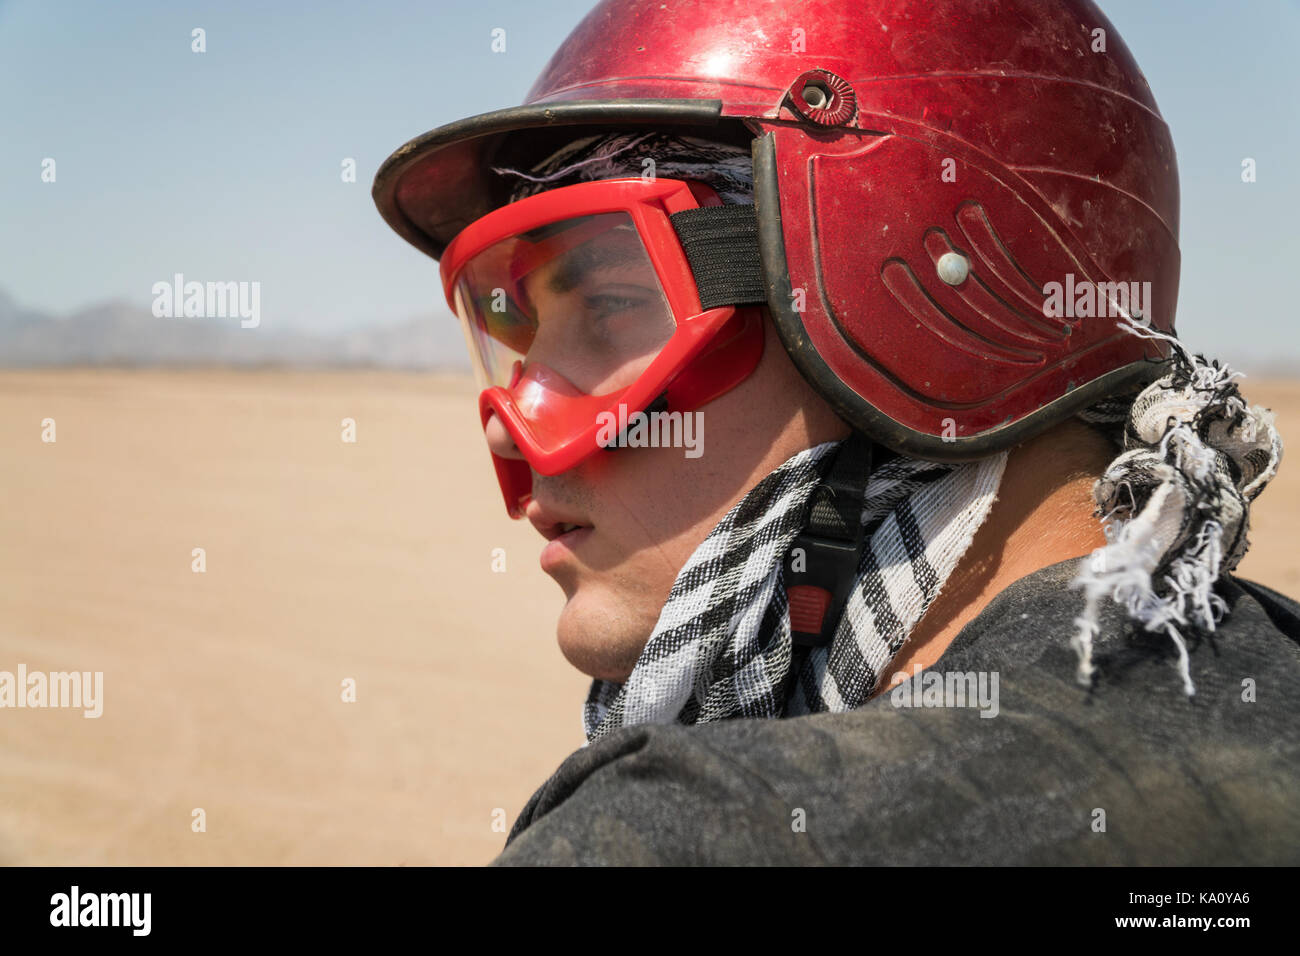 Jeune mec pendant desert excursion en quad - homme en casque et vêtements  d'aventure dans les scénarios exotiques - Notion d'activité, de la liberté  et de adventu Photo Stock - Alamy